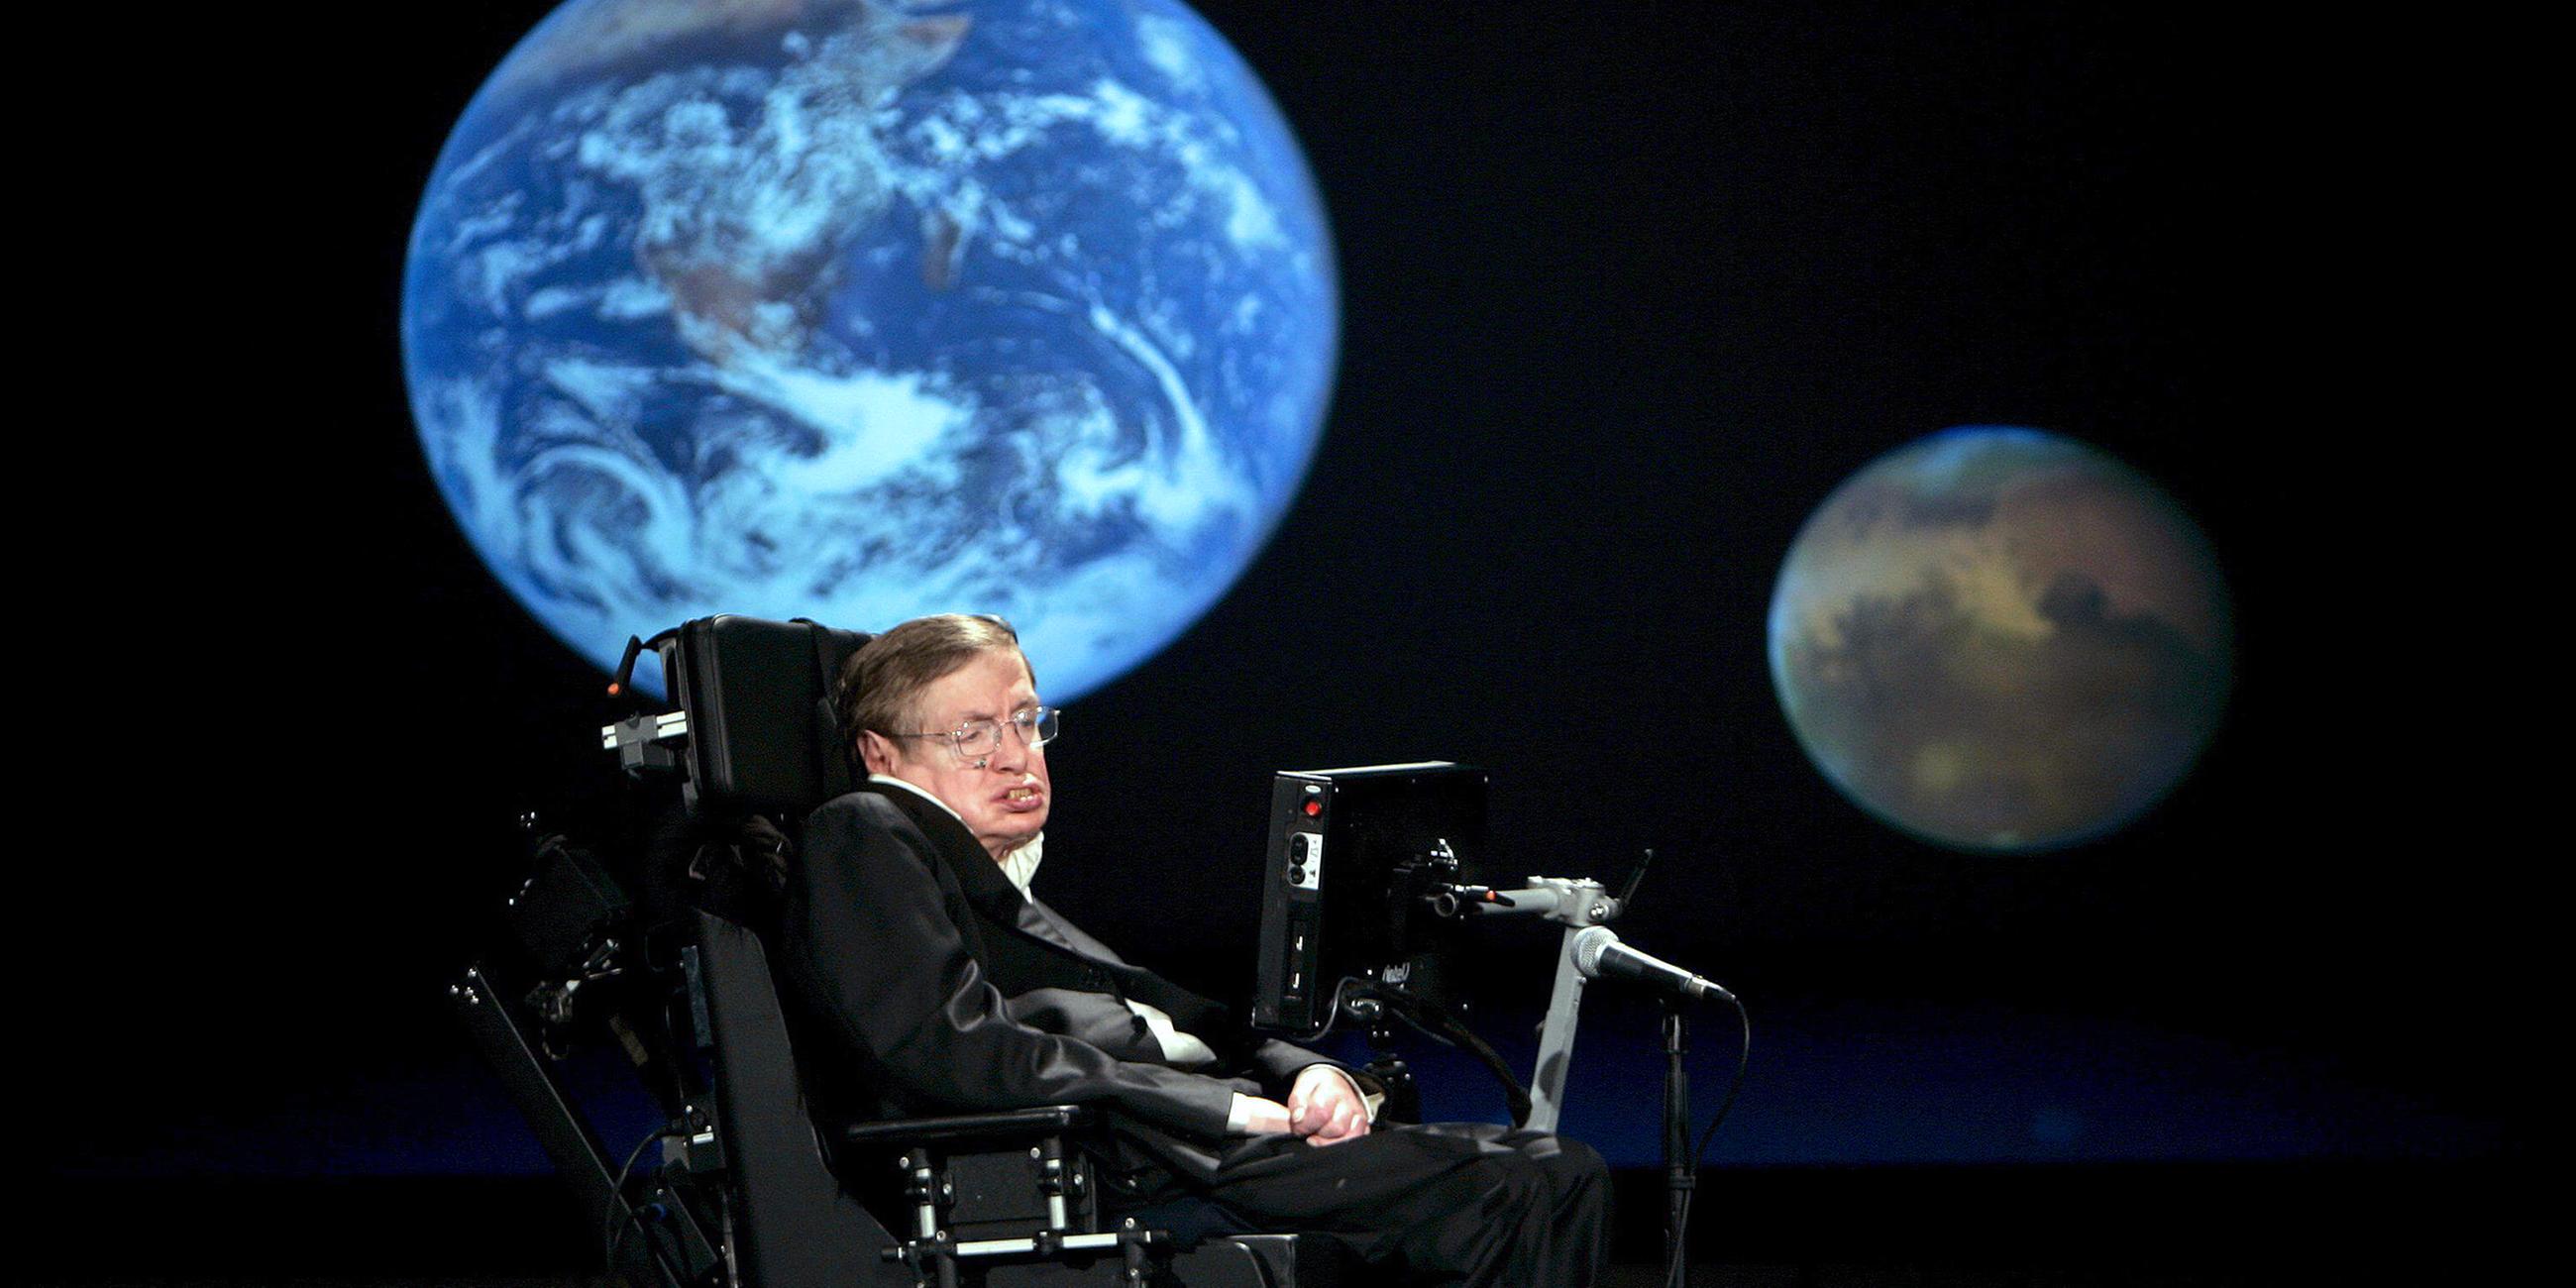 Archiv: Stephen Hawking hält einen Vortrag an der George Washington Universität, aufgenommen am 21.04.2008